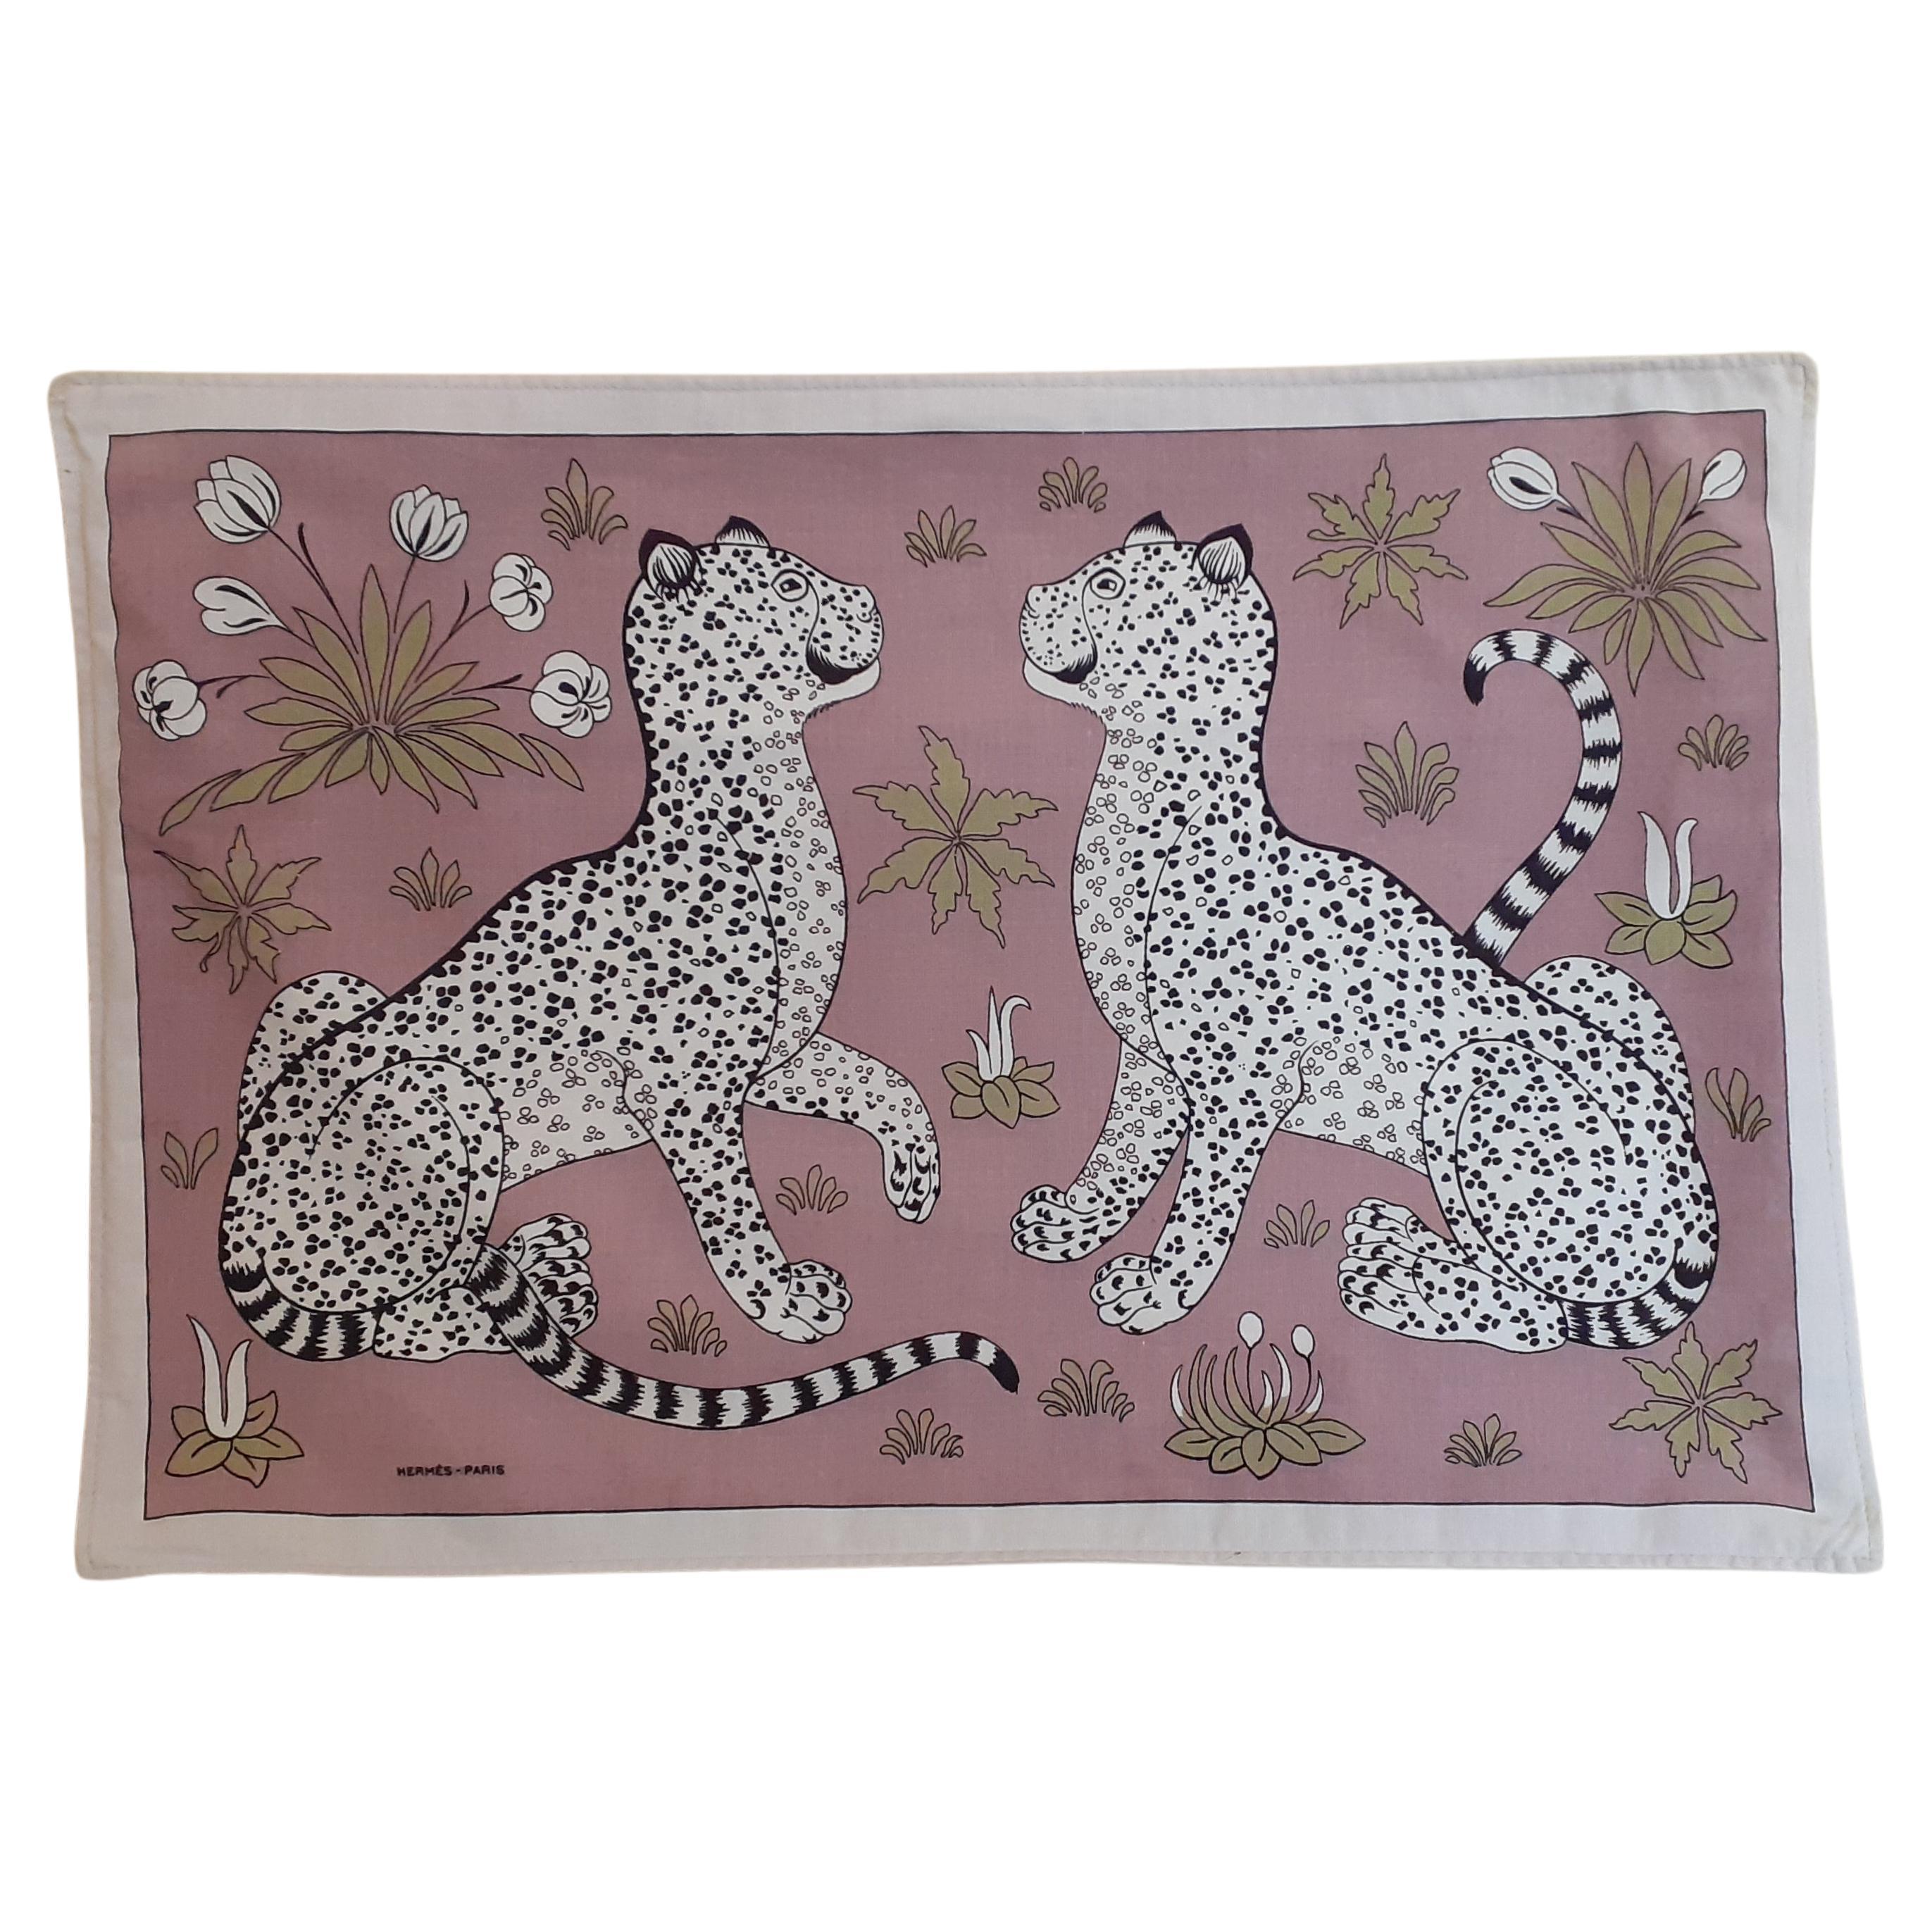 Hermès Les Leopards Print Cushion Cover